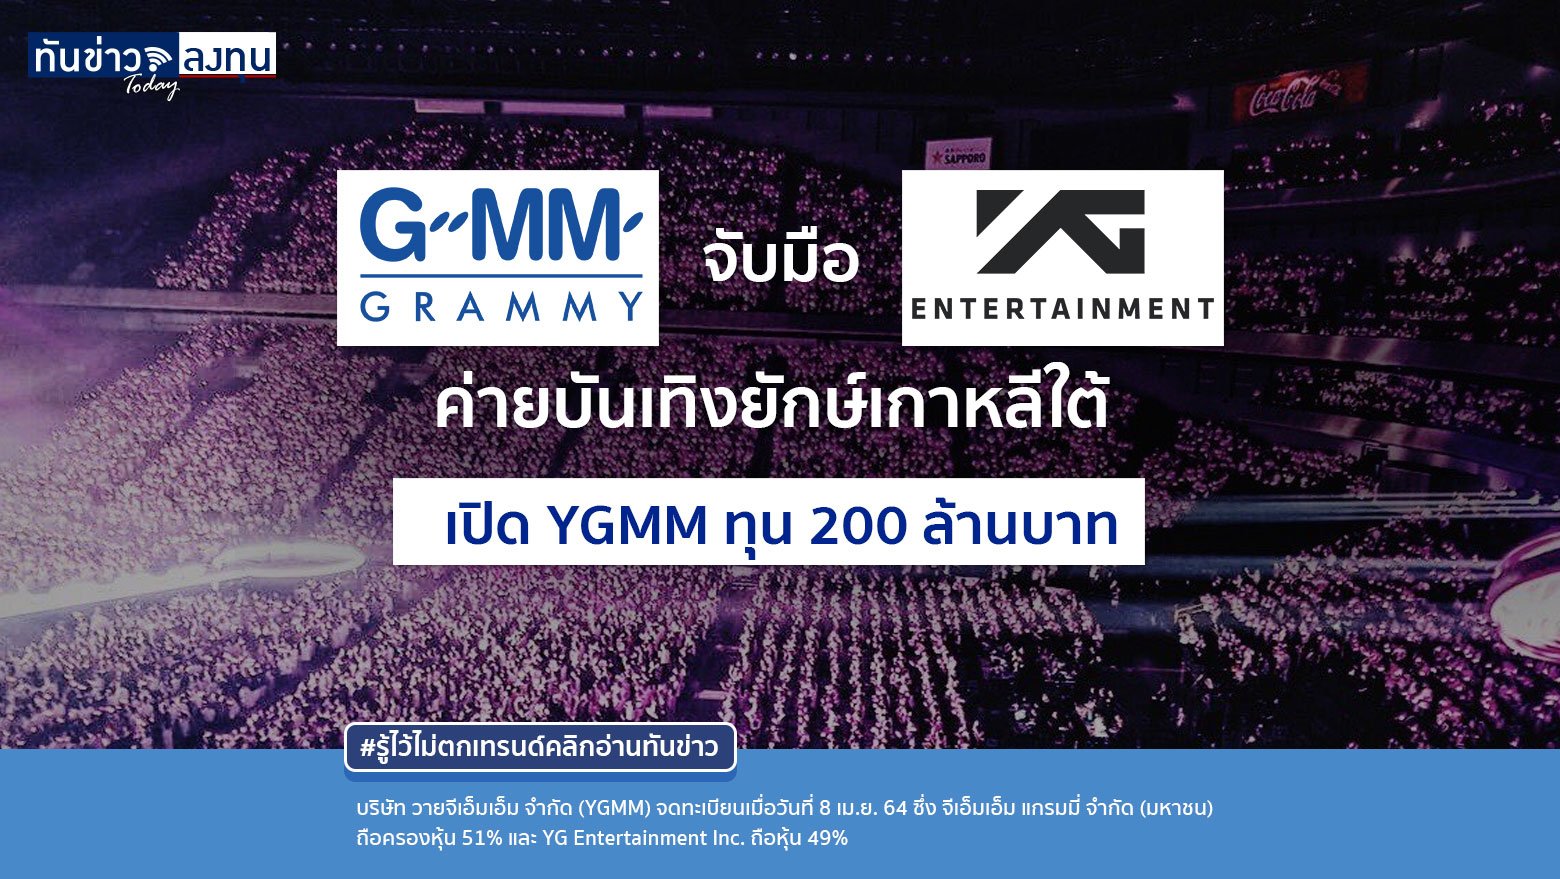 GRAMMY จับมือ YG ค่ายบันเทิงยักษ์เกาหลีใต้  เปิด YGMM ทุน 200 ล้านบาท